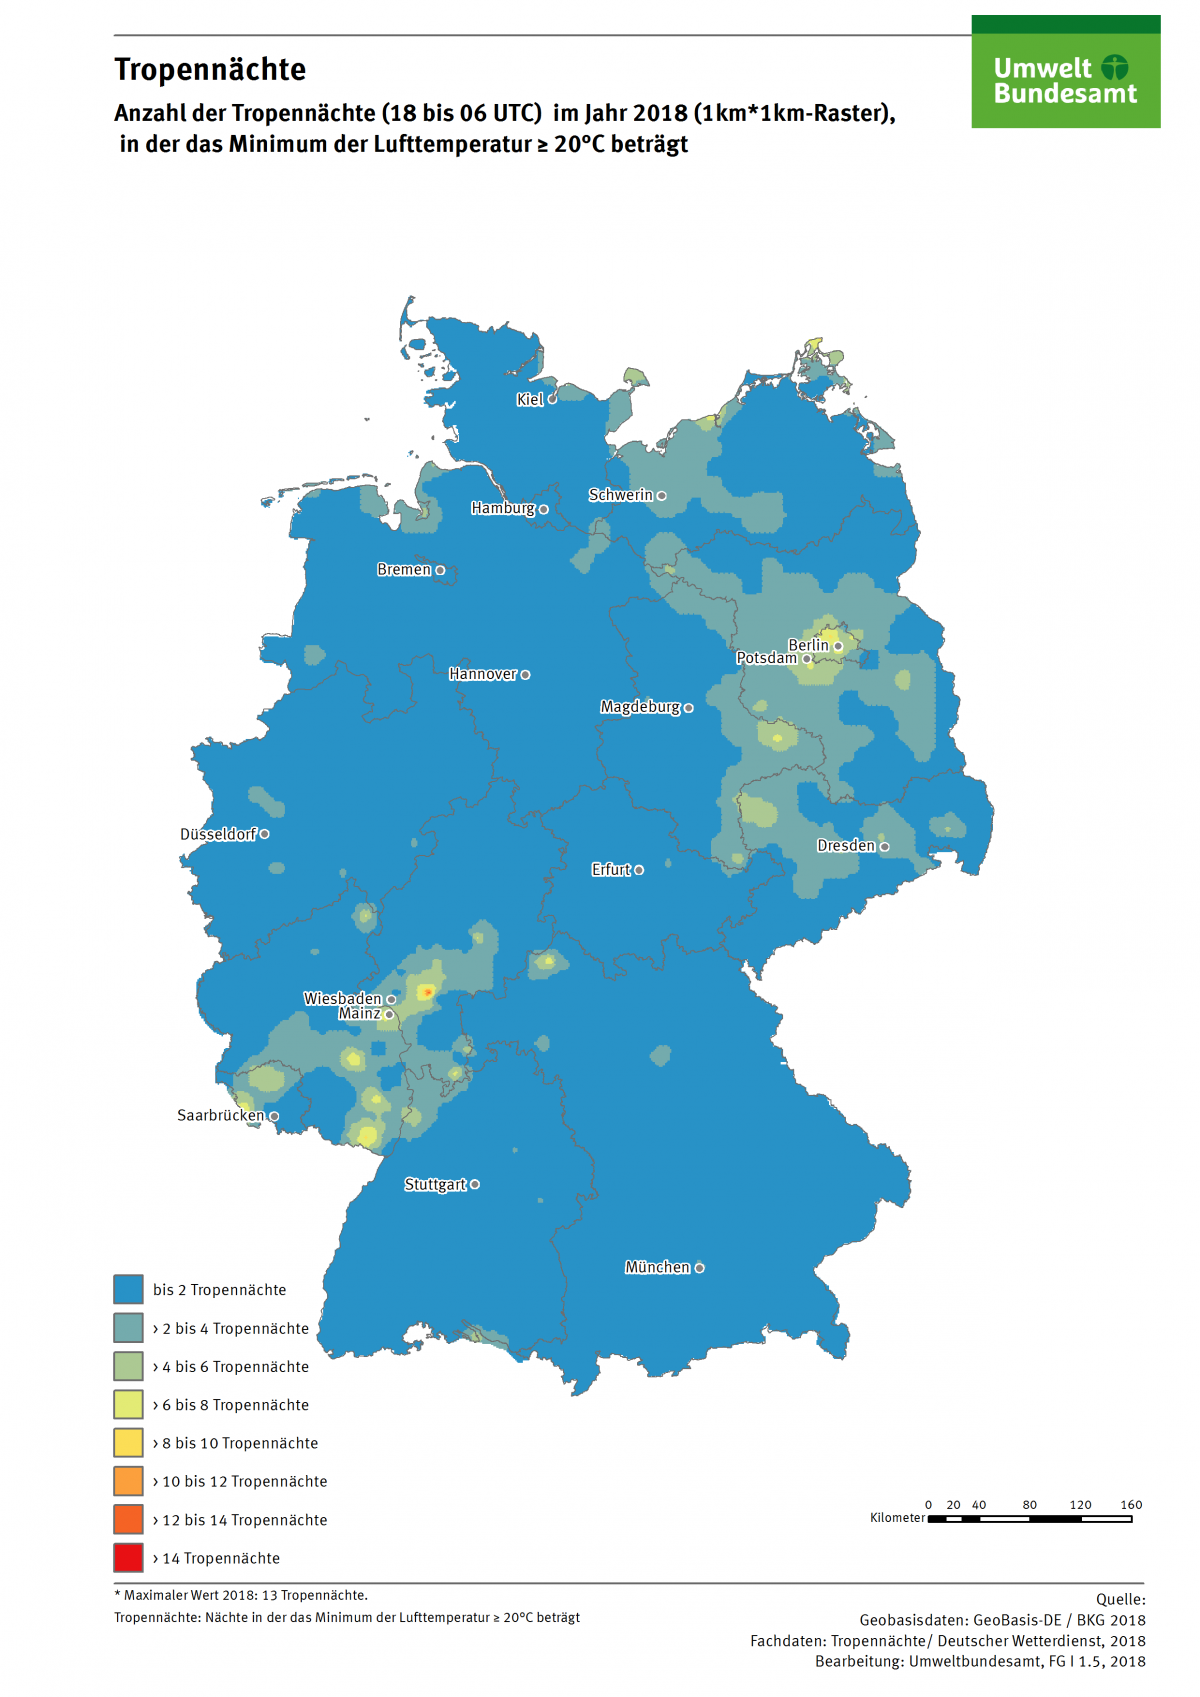 Die Karte zeigt die Anzahl der Tropennächte in Deutschland im Jahr 2018. In diesem Jahr gab es in einzelnen Regionen bis zu 13 Tropennächte.